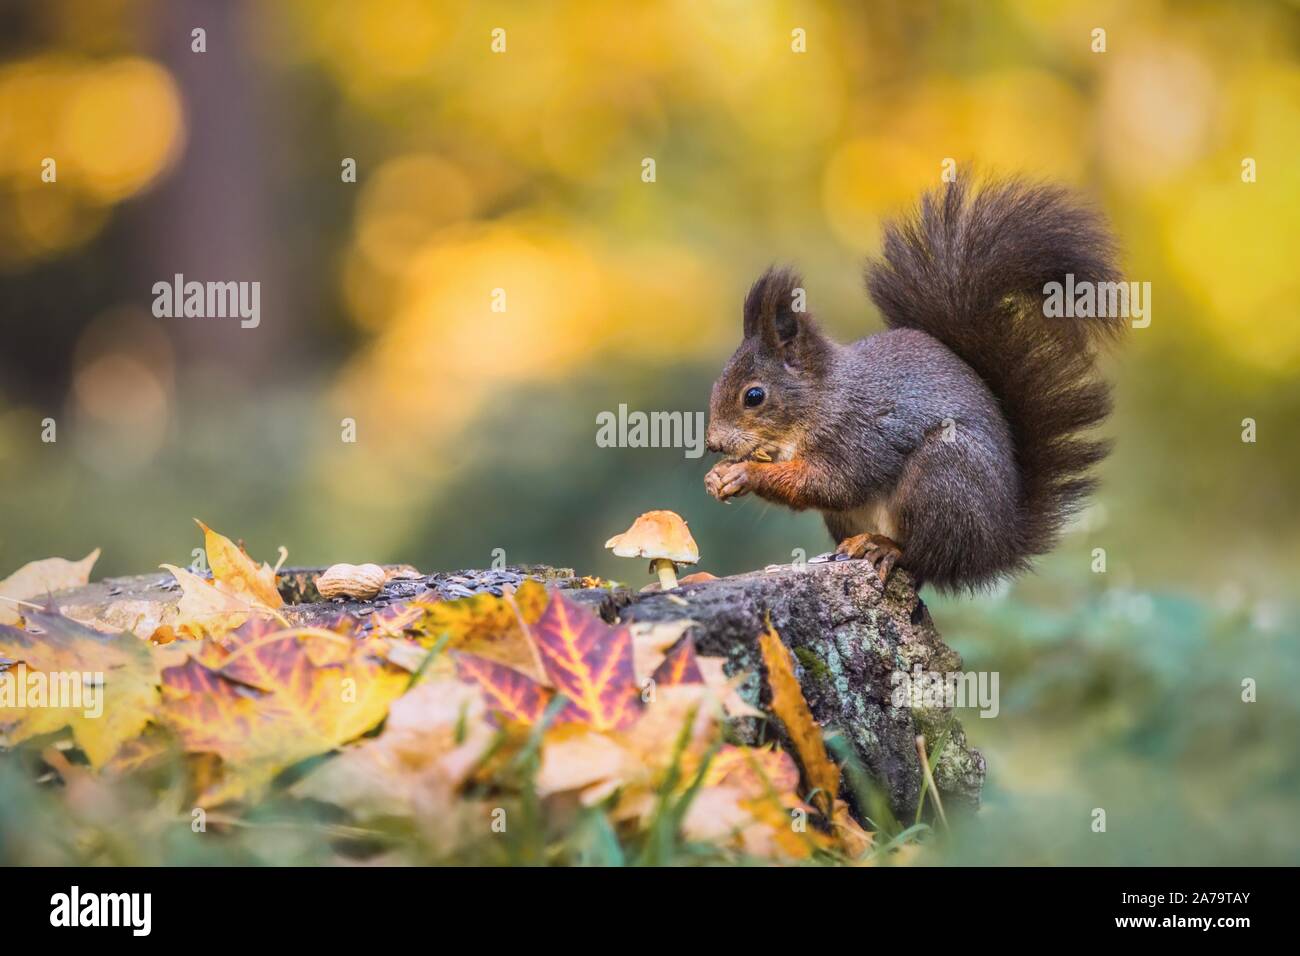 Écureuil rouge faim mignon assis sur une souche d'arbre couverts de feuilles colorées et d'un champignon qui se nourrissent de graines. Jour d'automne dans une forêt profonde. Banque D'Images